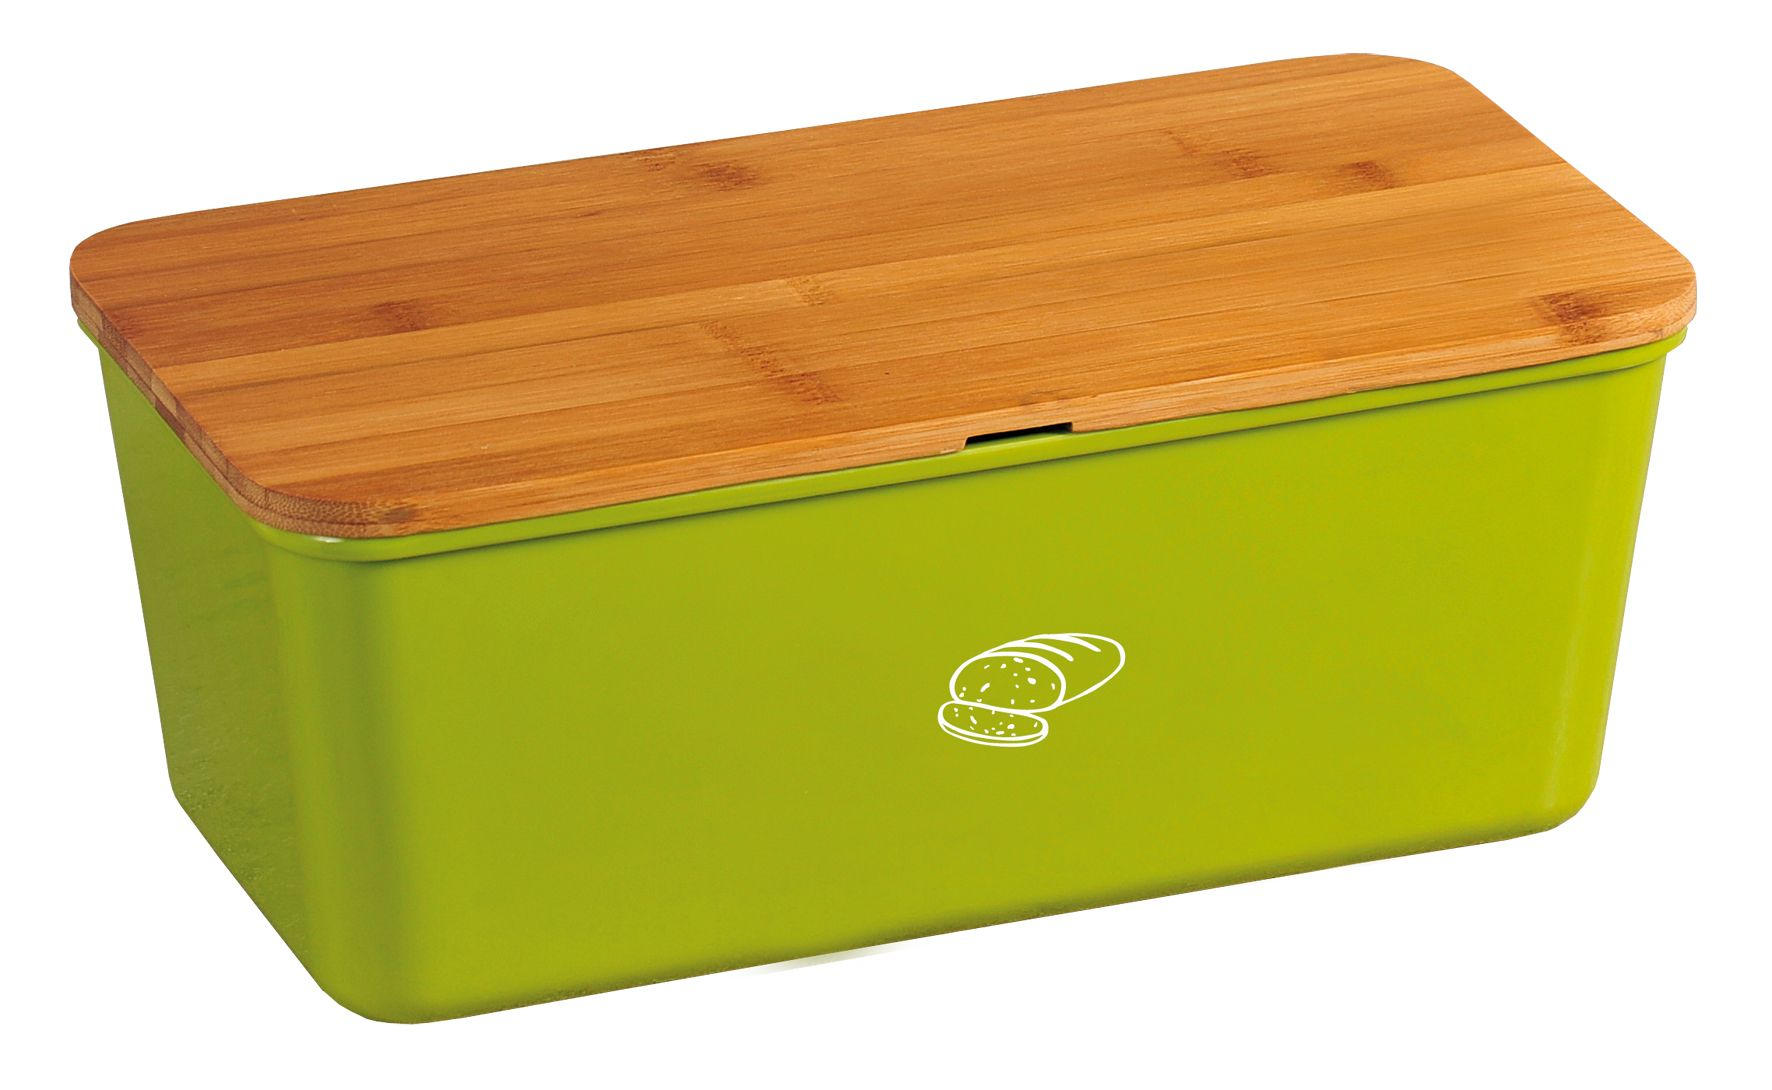 BOX NA CHLIEB - prírodné farby/zelená, Basics, drevo/plast (34/18/13cm) - Novel